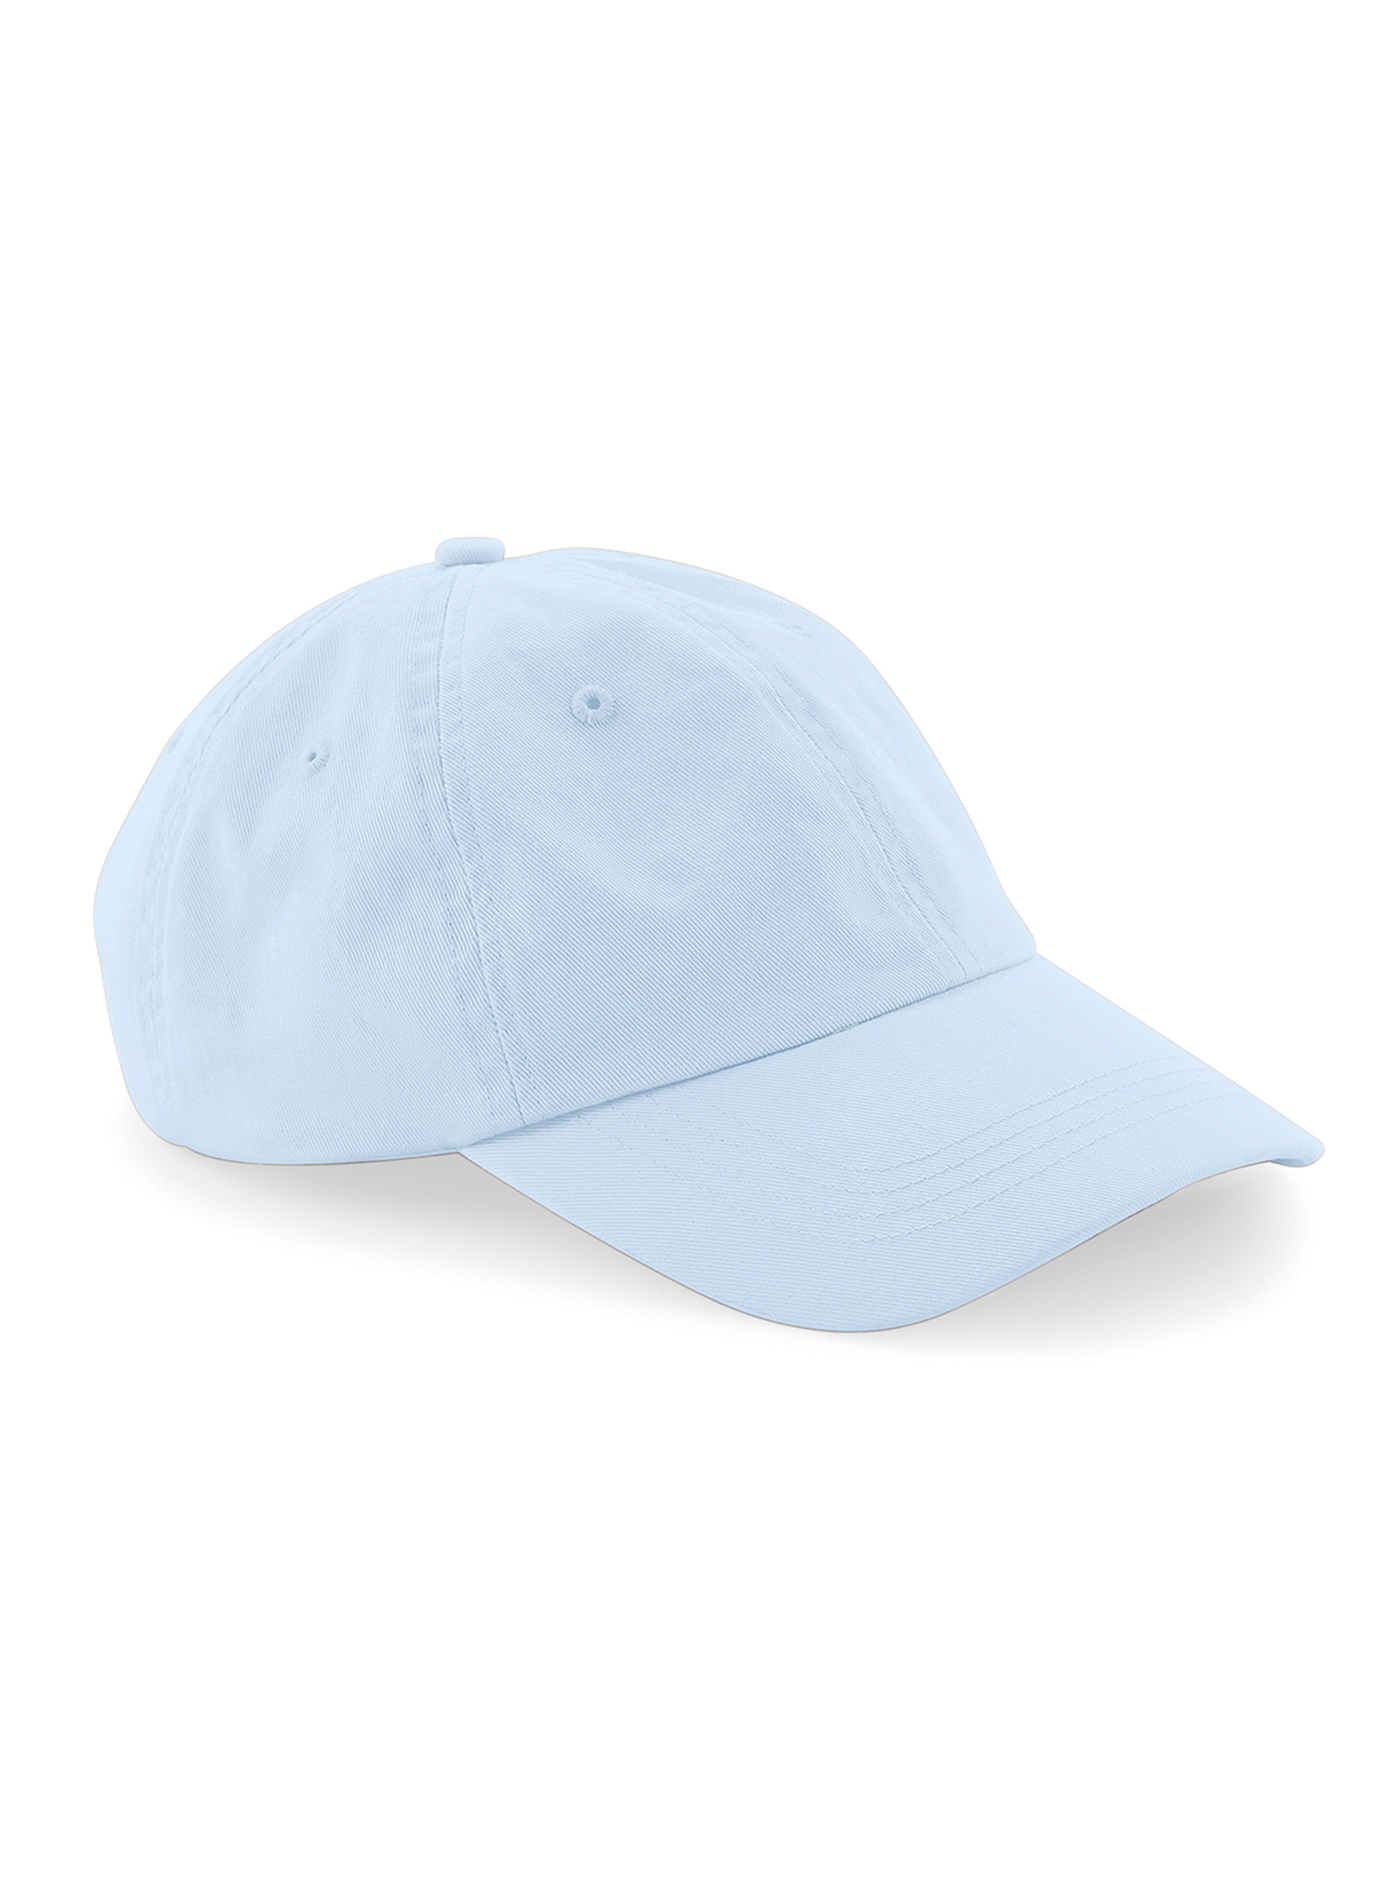 Čepice s nízkým profilem 6 dílná Beechfield - Bledě modrá univerzal